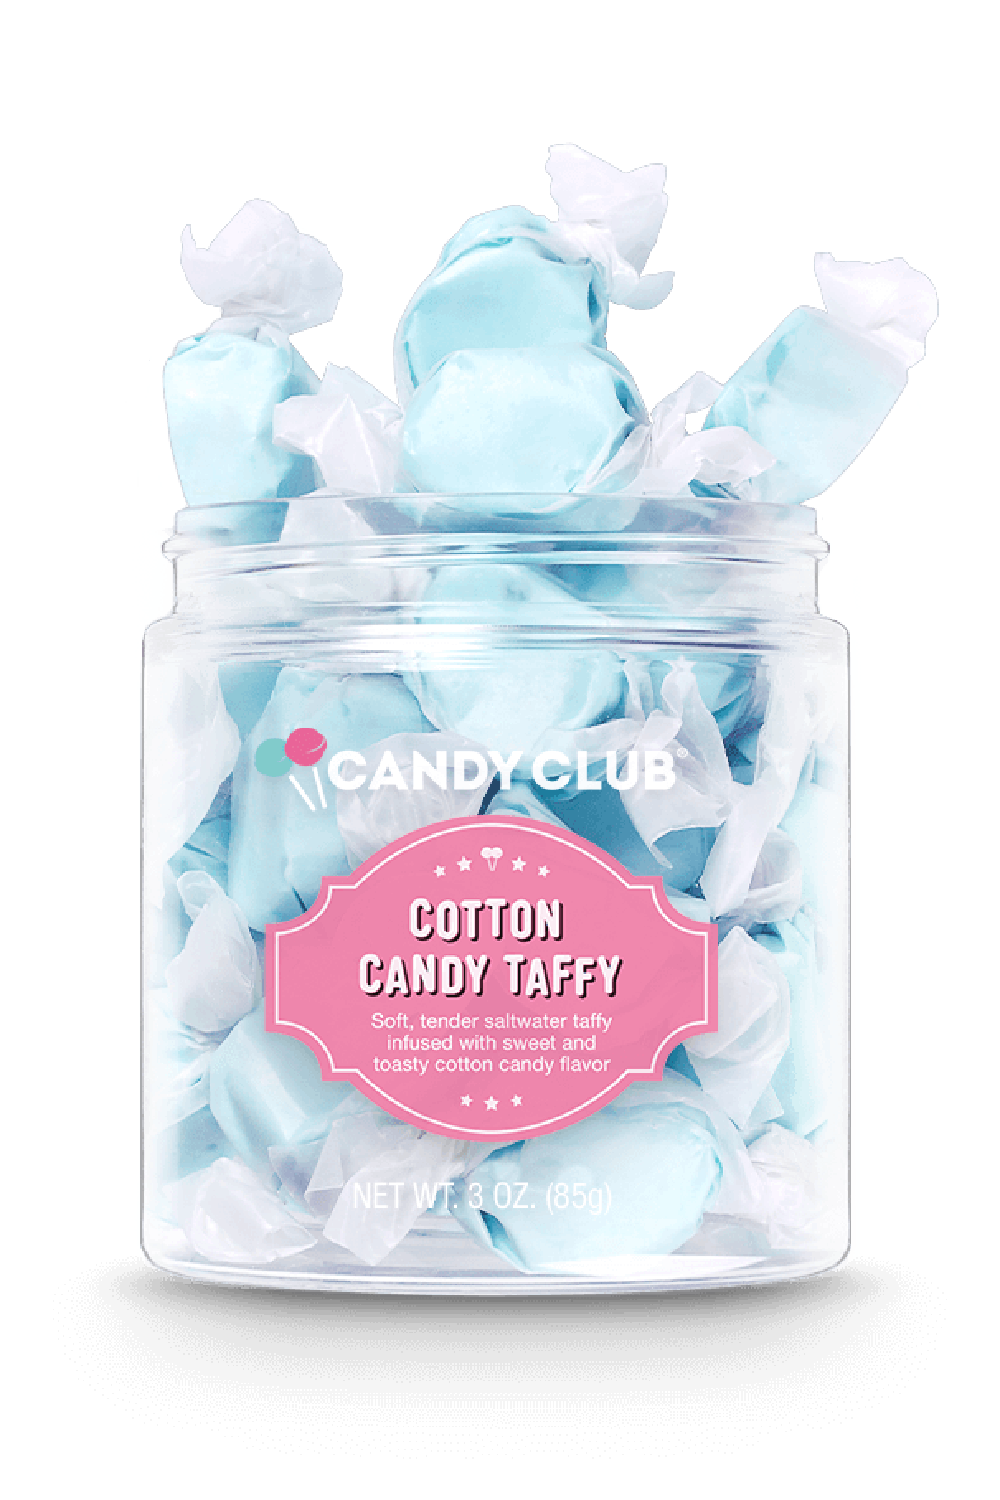 Candy Club Jar - Cotton Candy Taffy